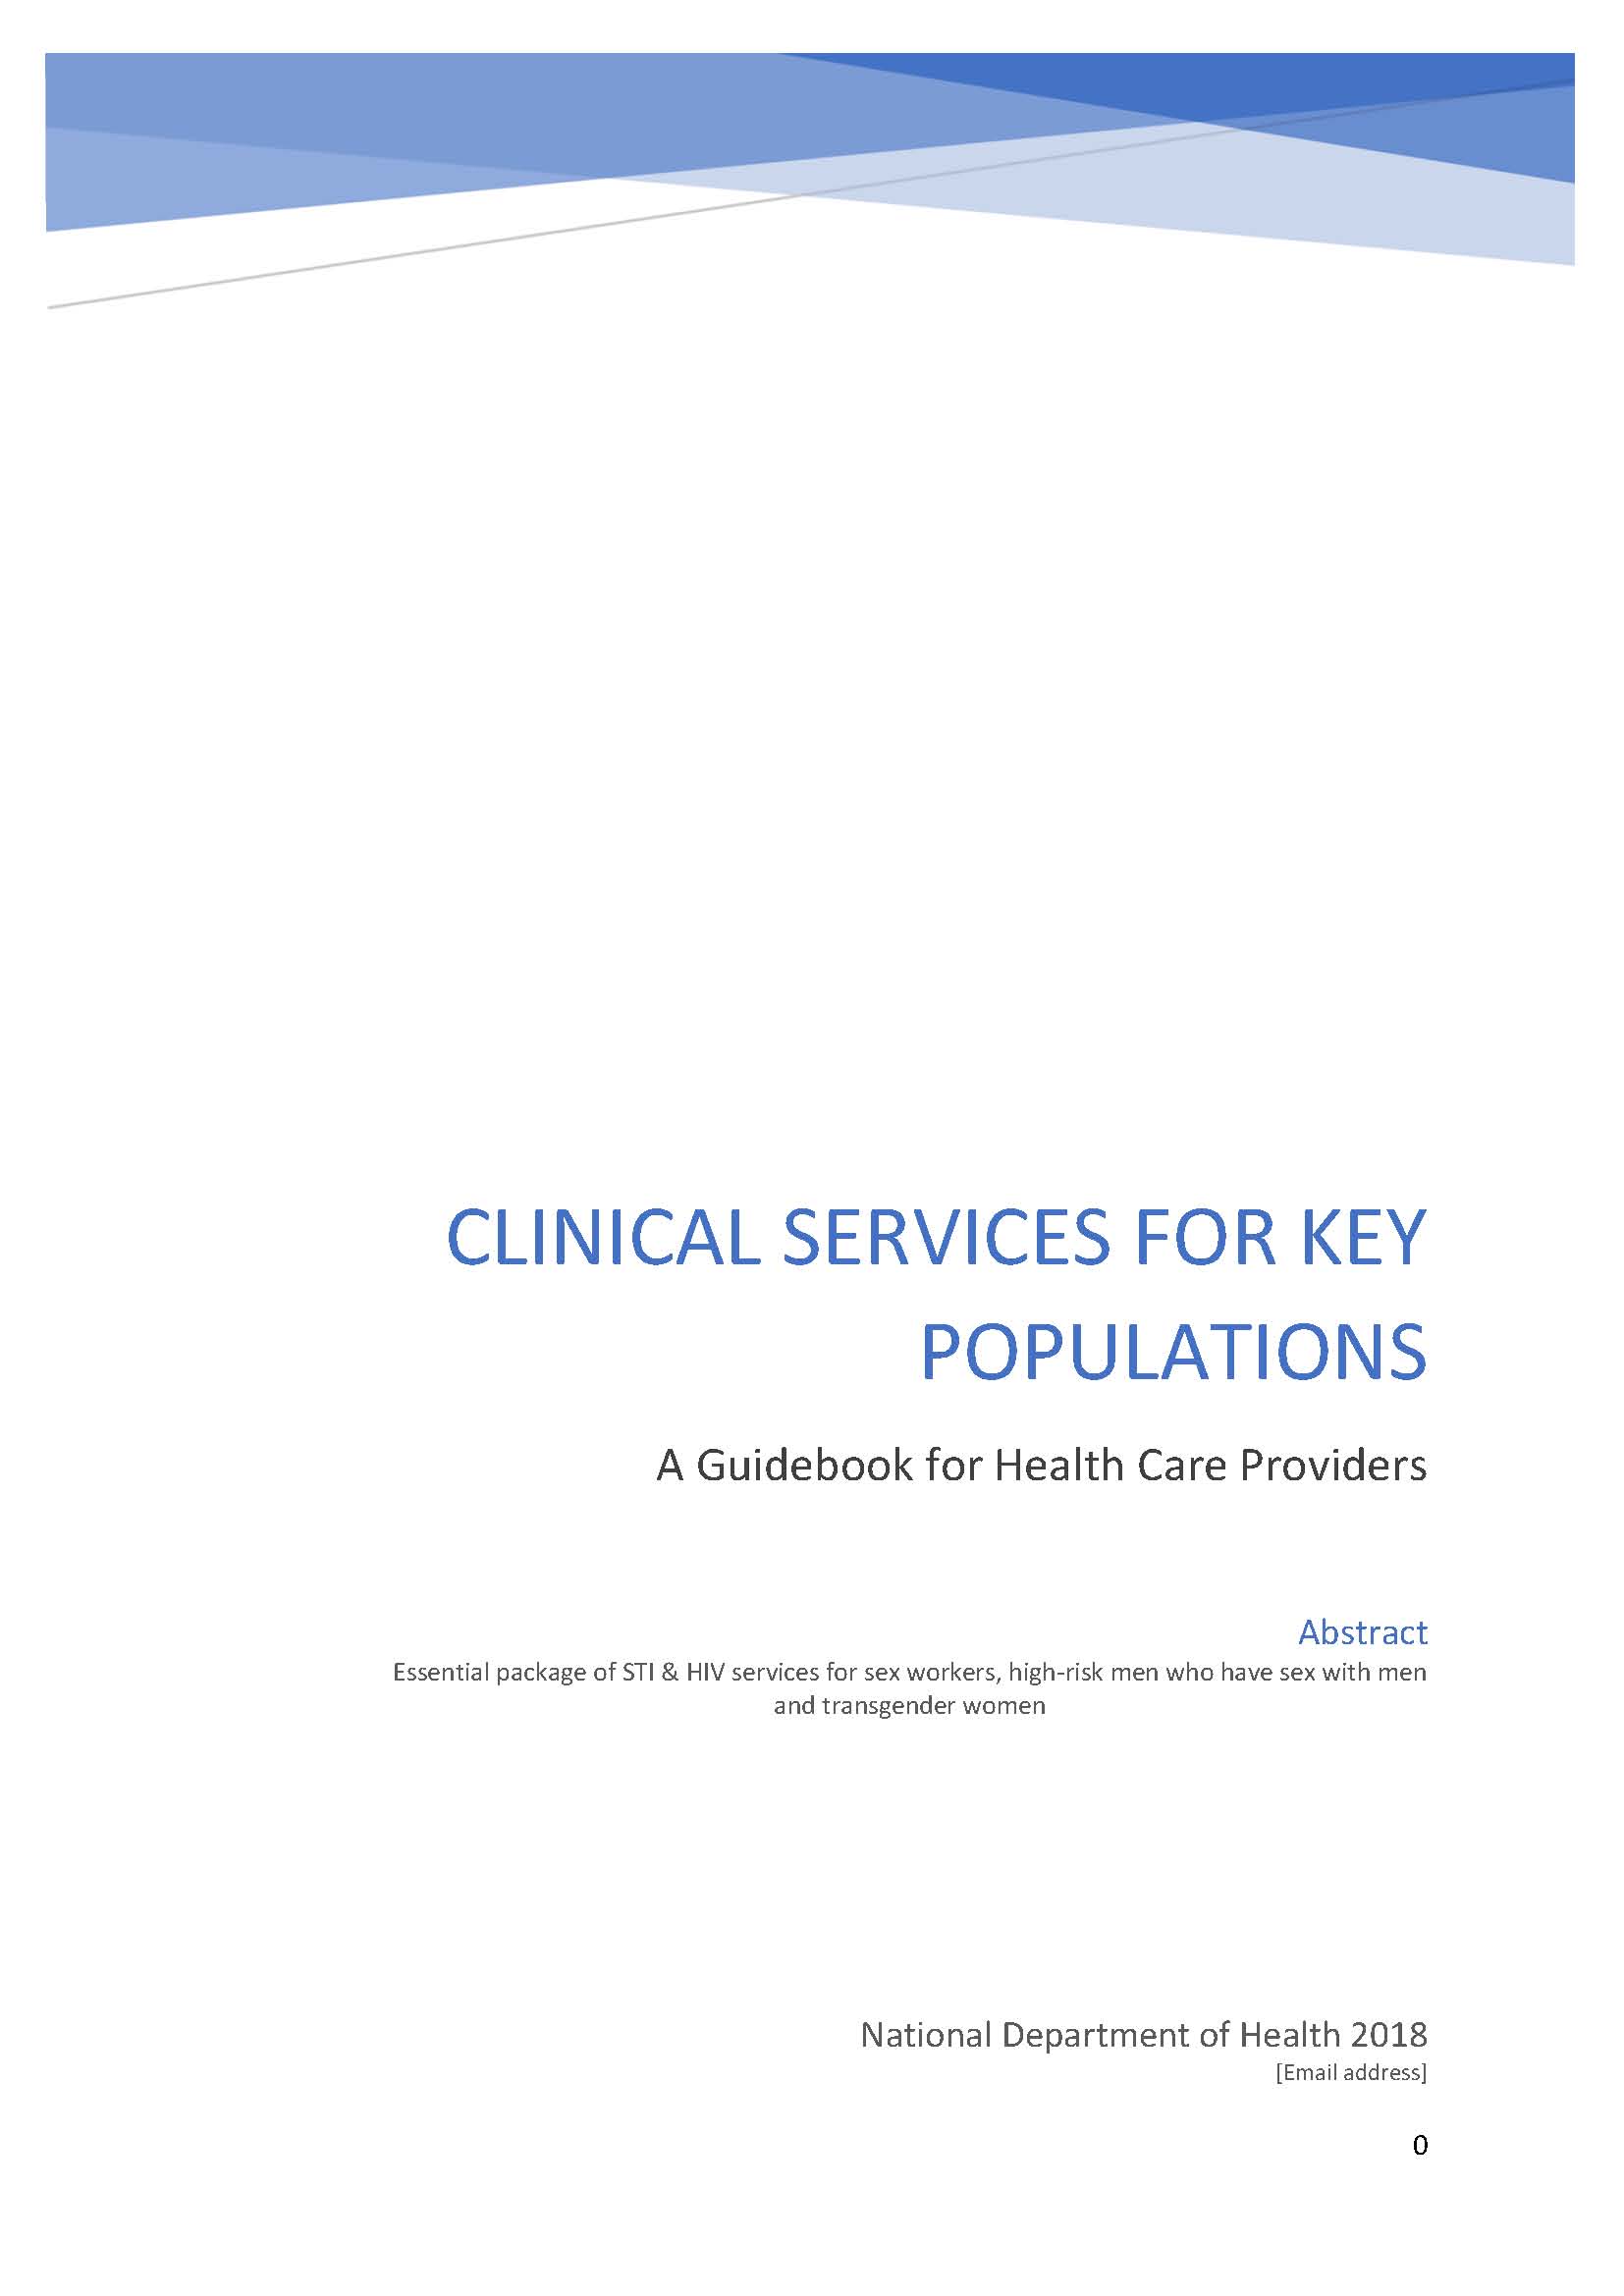 Services cliniques pour les populations clés : Un guide pour les prestataires de soins de santé